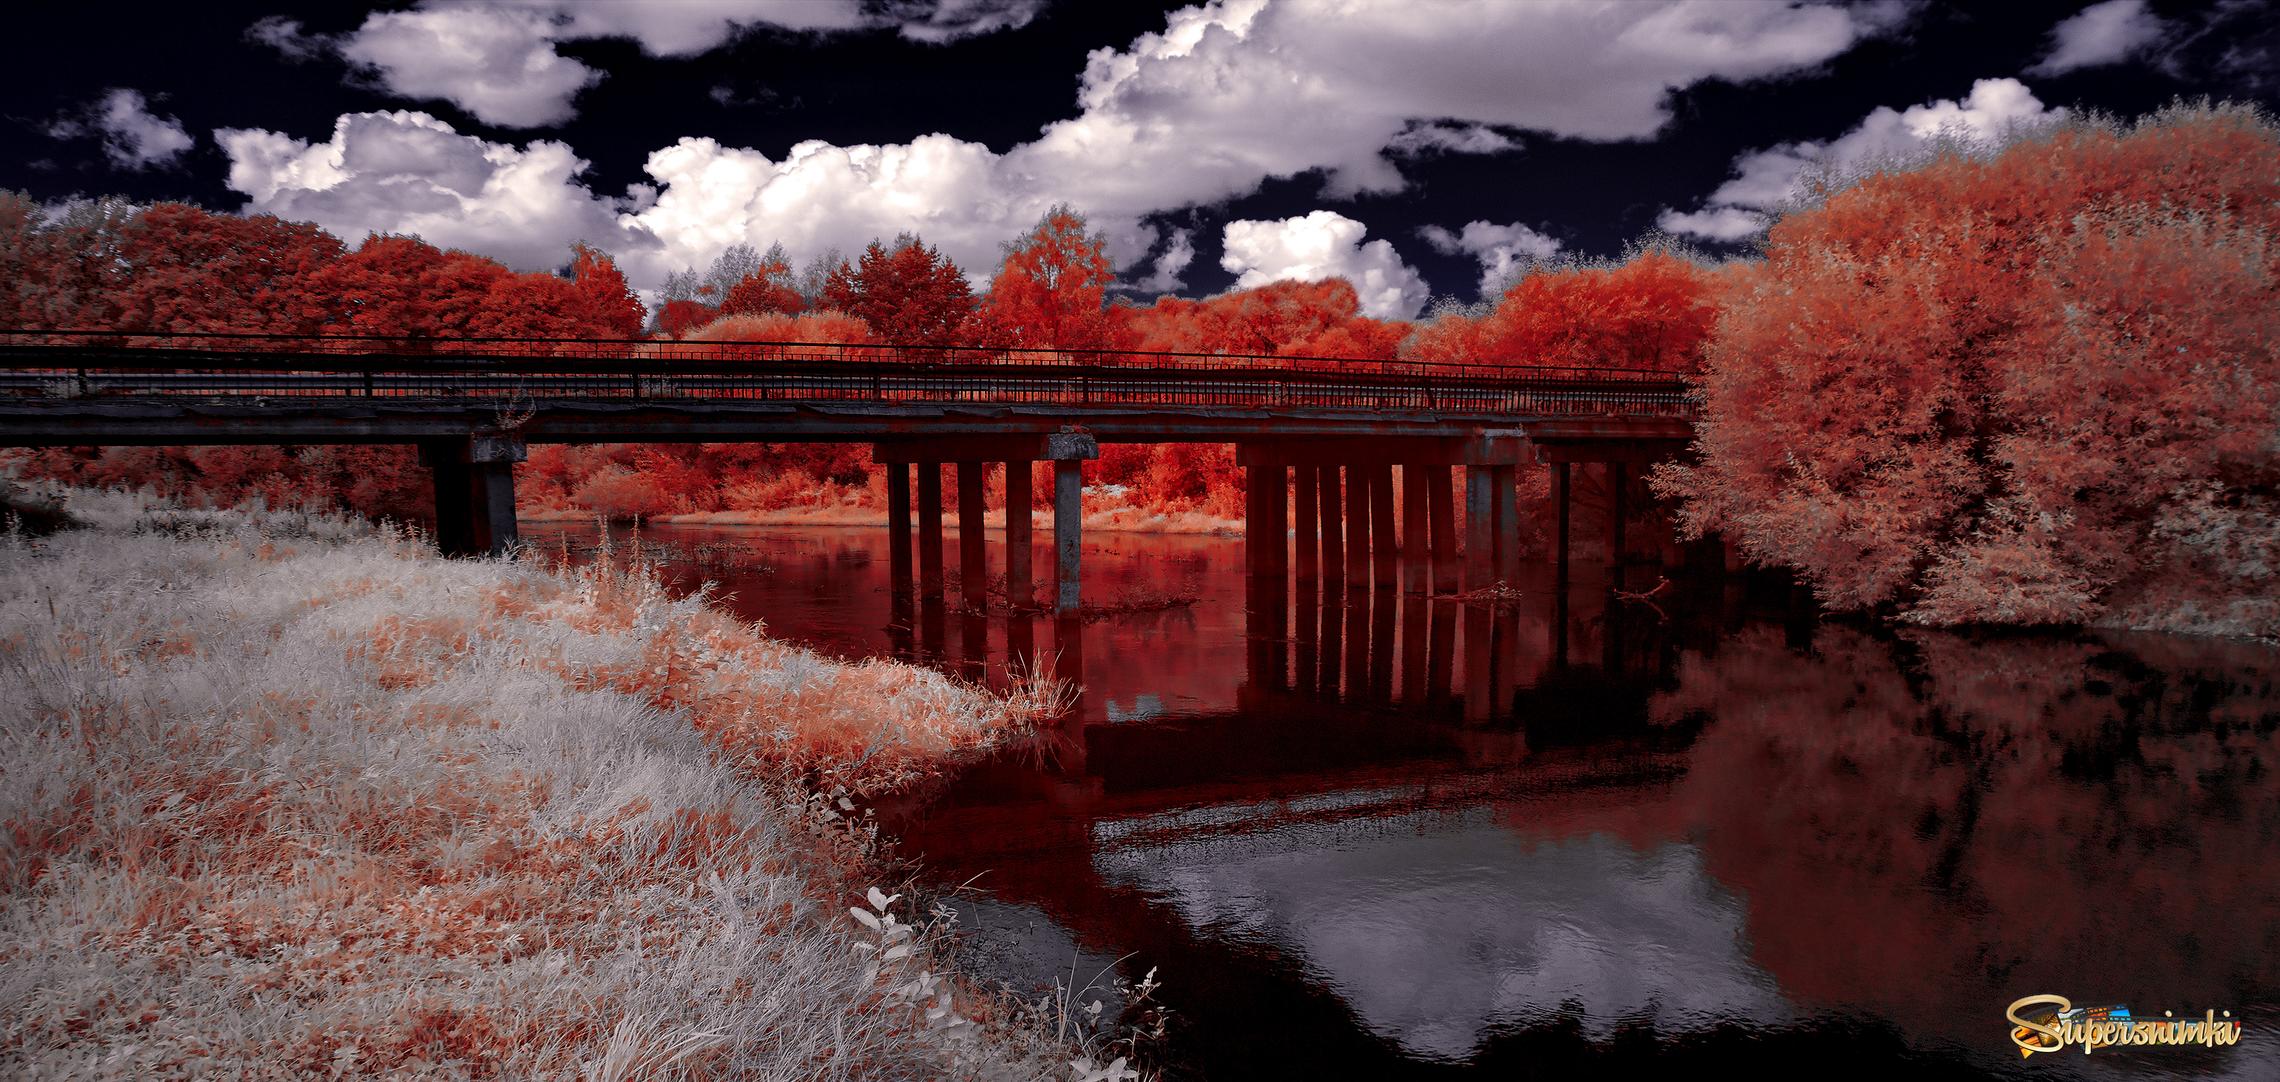 Реки и мосты. Инфракрасная фотография. 